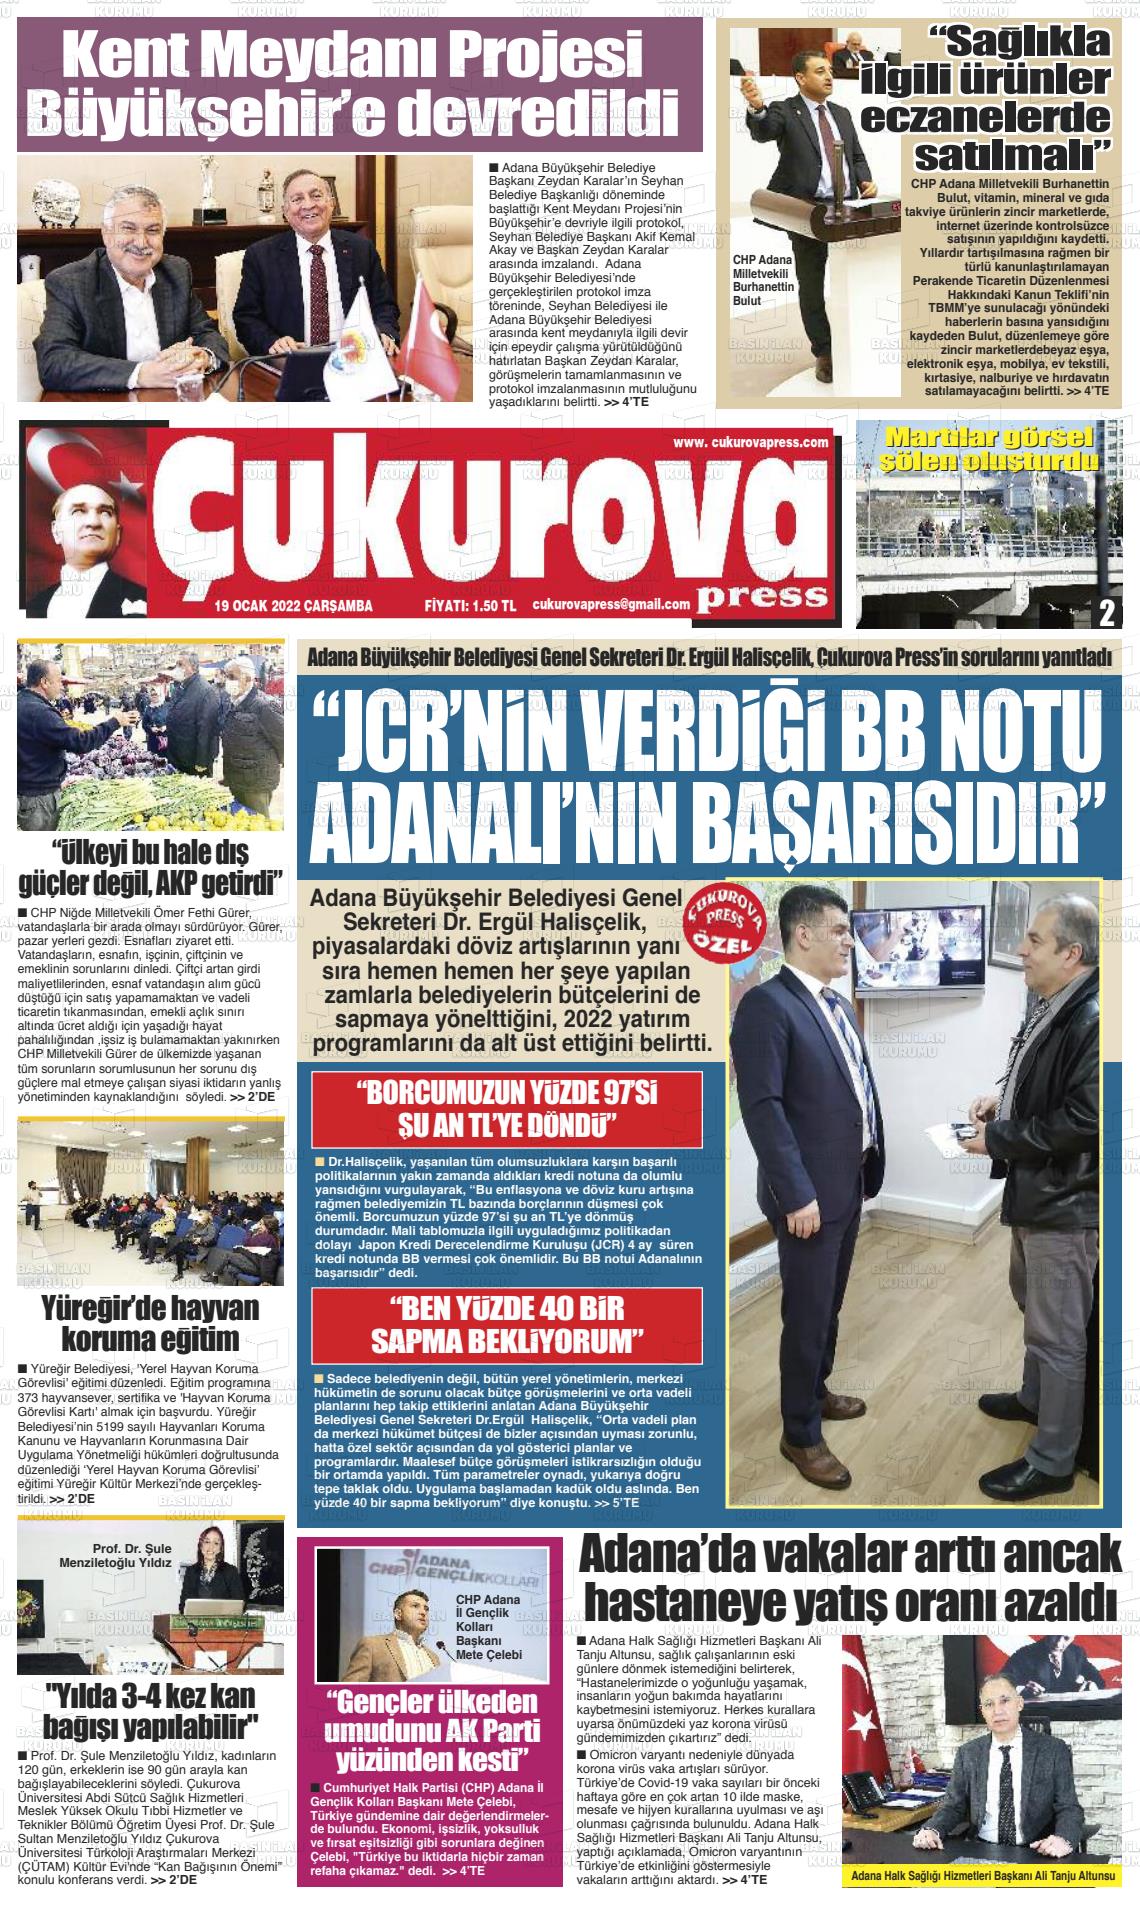 19 Ocak 2022 Çukurova Press Gazete Manşeti